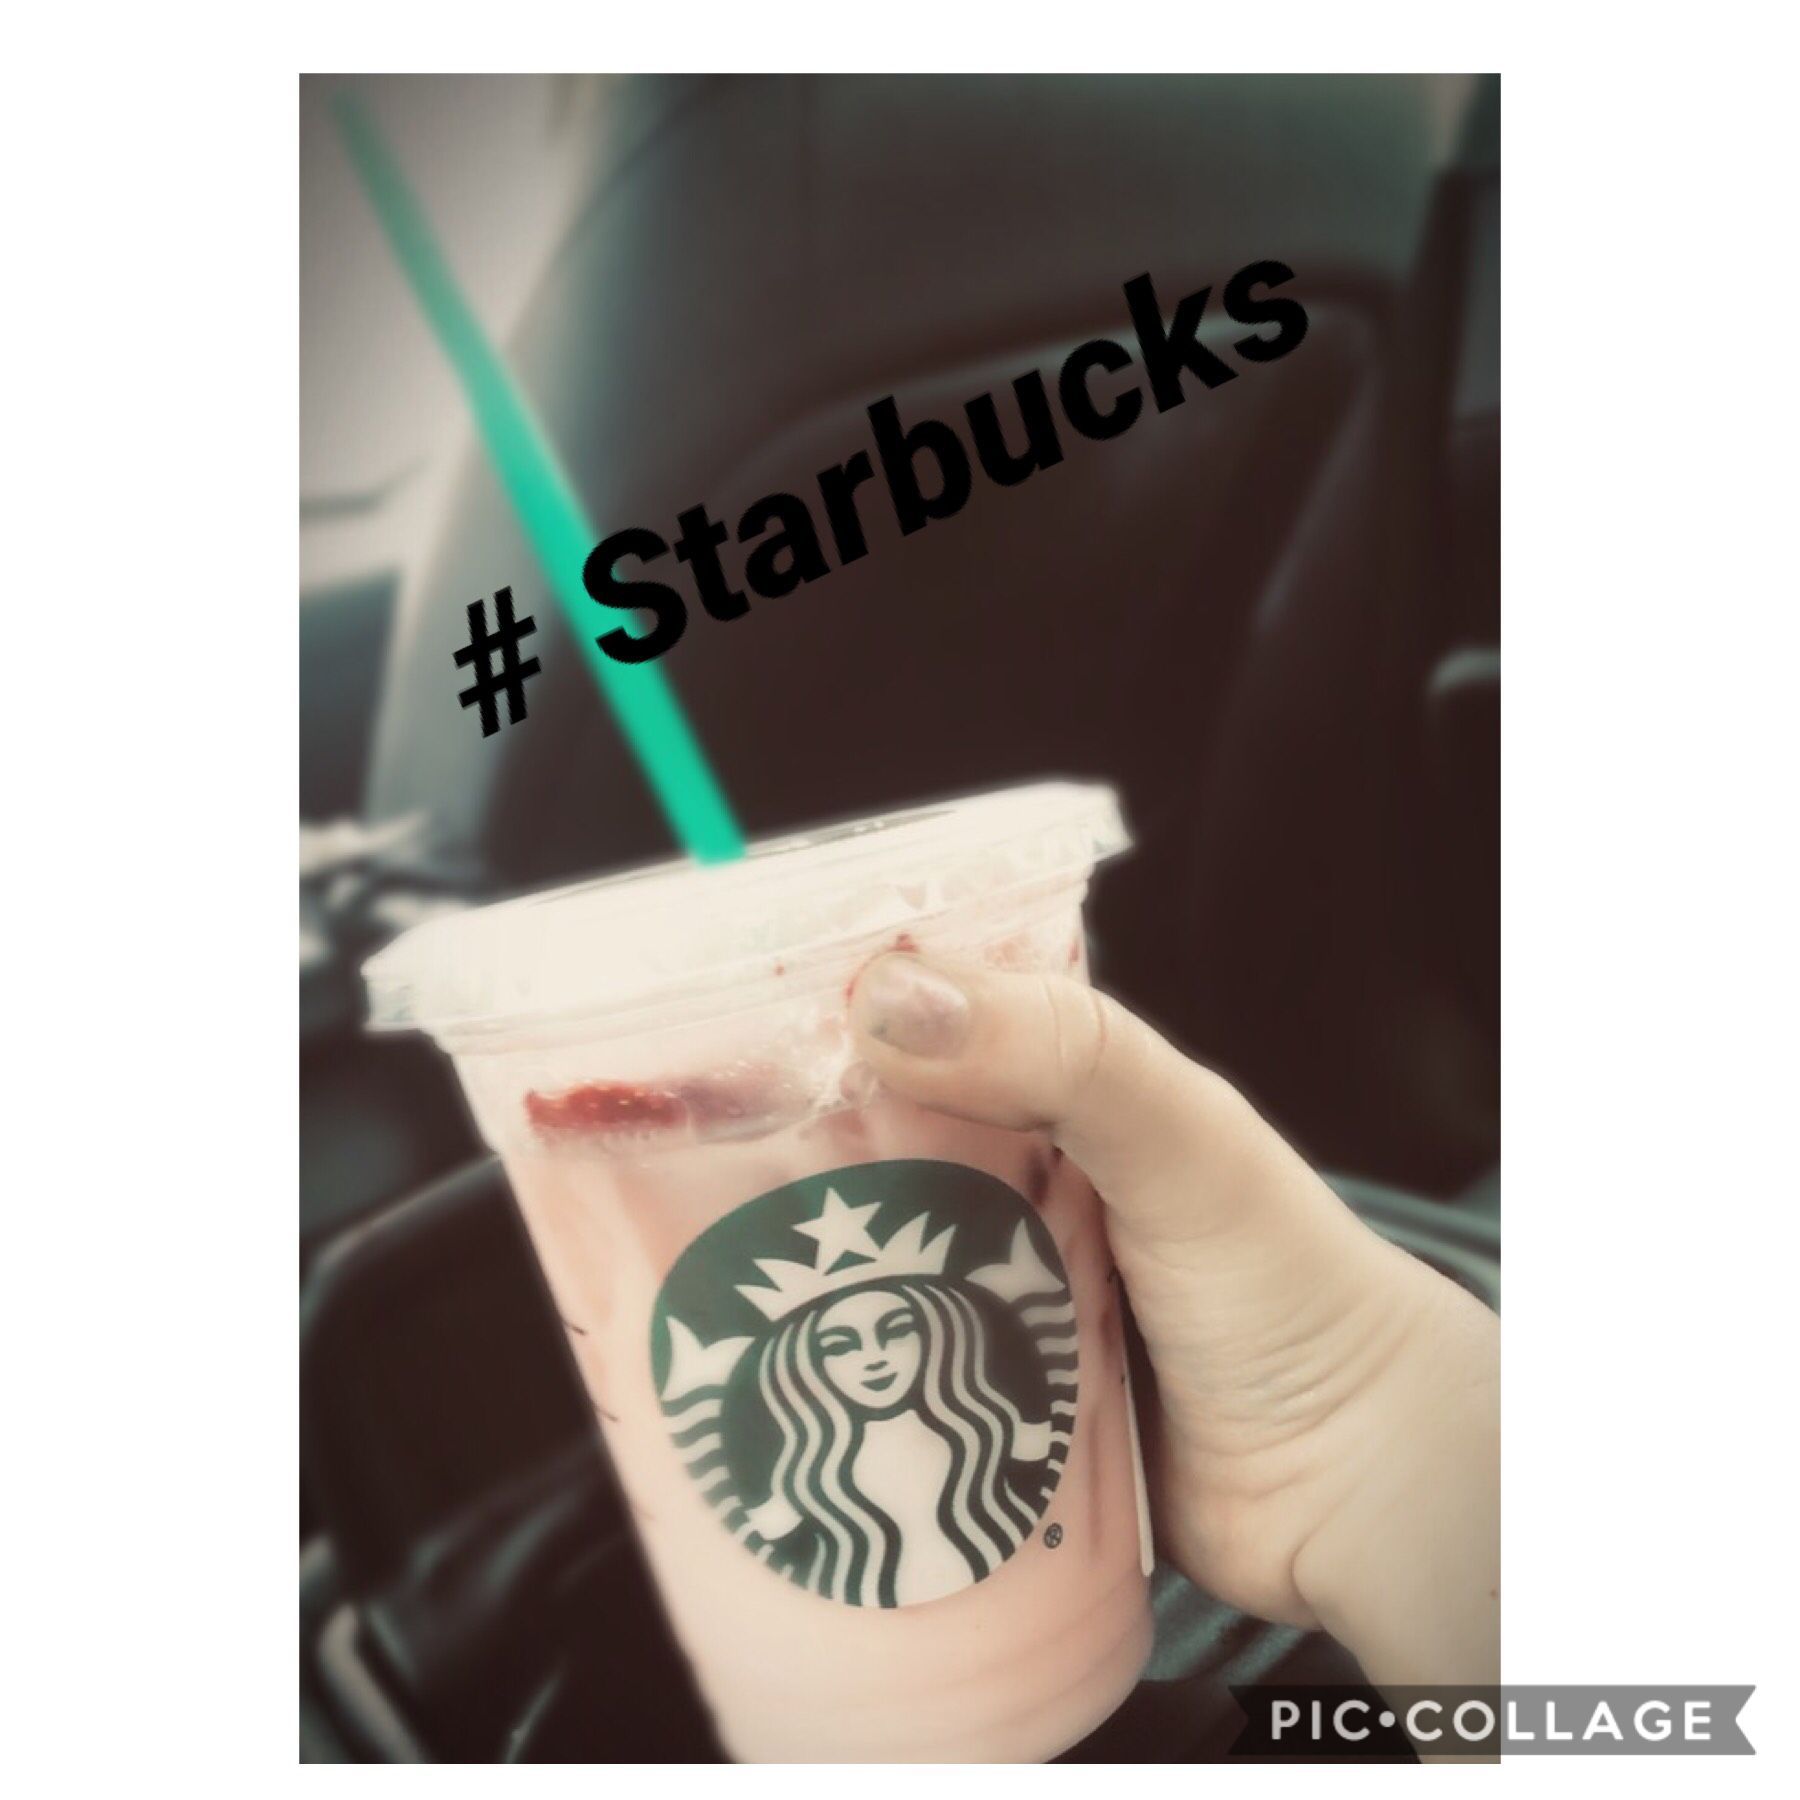 I’m a Starbucks girl